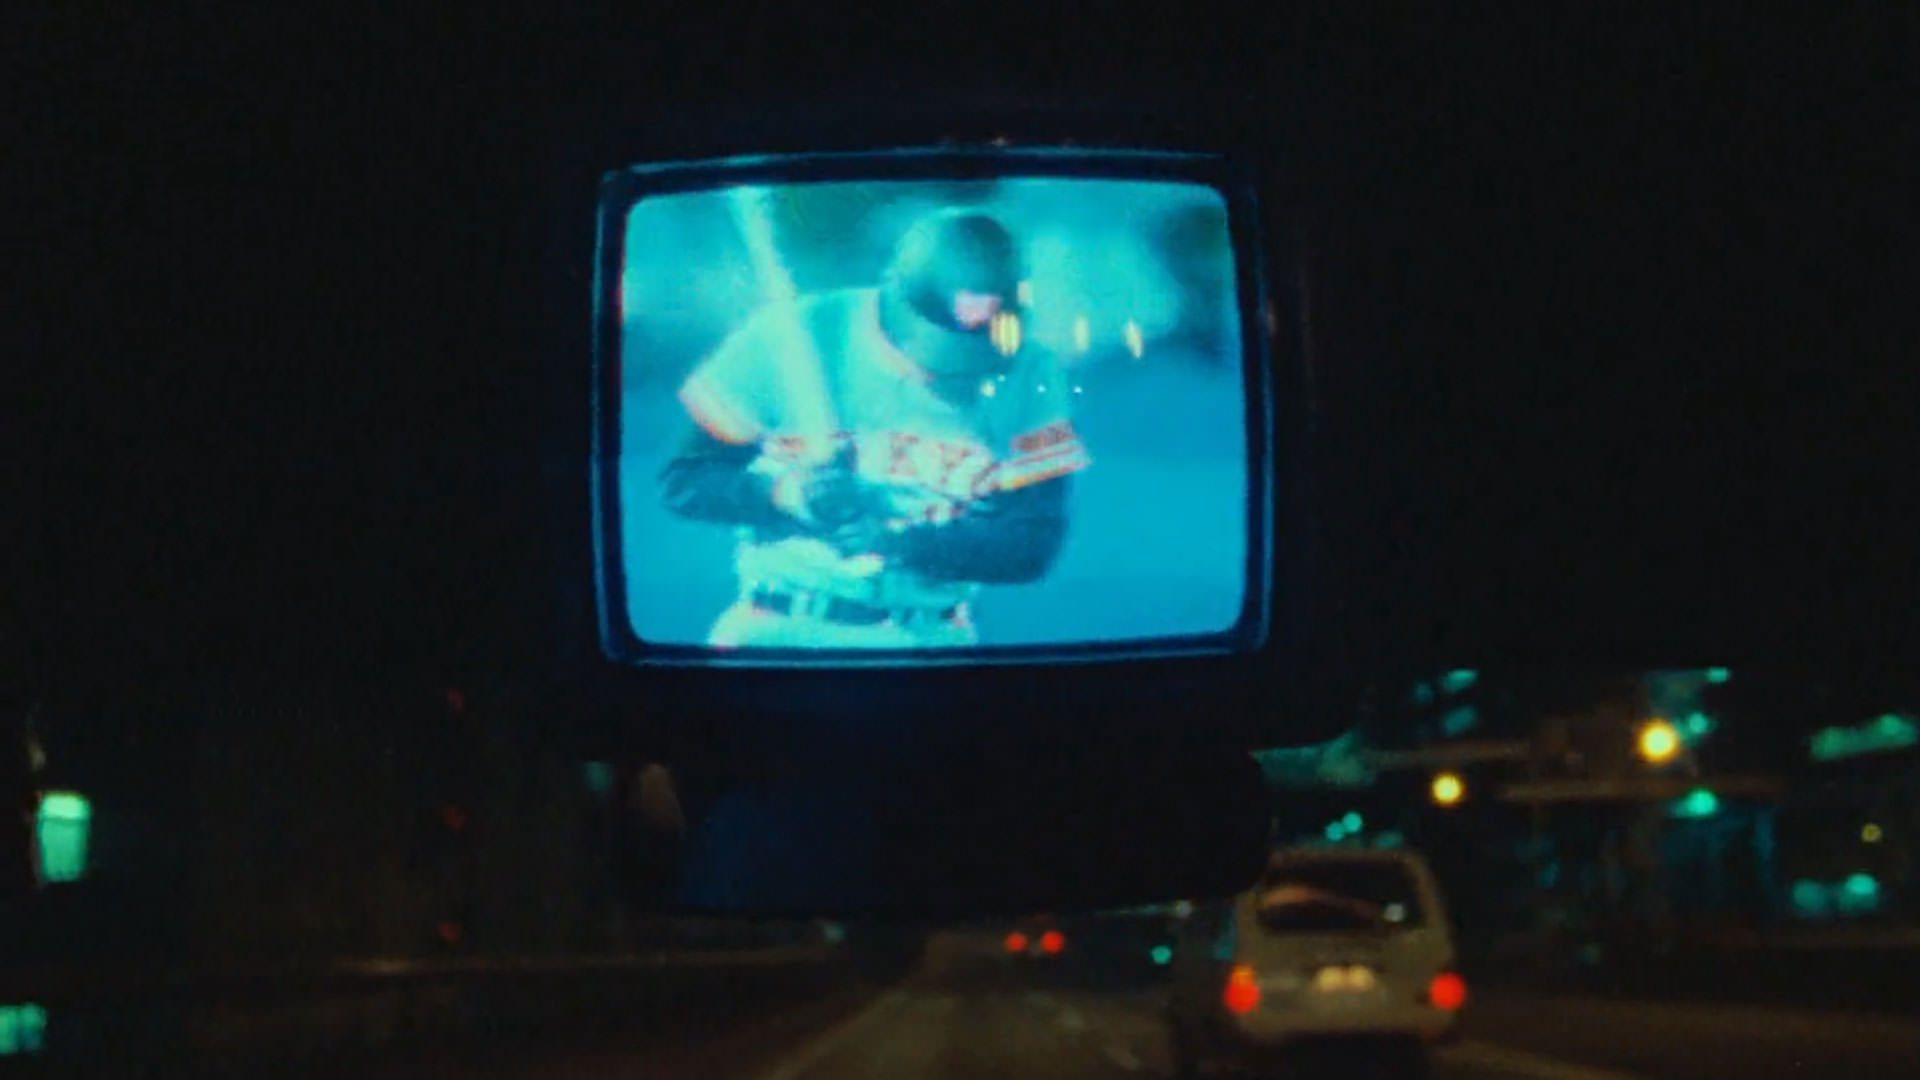 پخش زنده‌ی یک مسابقه‌ی بیسبال داخل یک تلویزیون کوچک داخل یک ماشین در حال حرکت در شب در نمایی از مستند تصاویری از توکیو به کارگردانی ویم وندرس